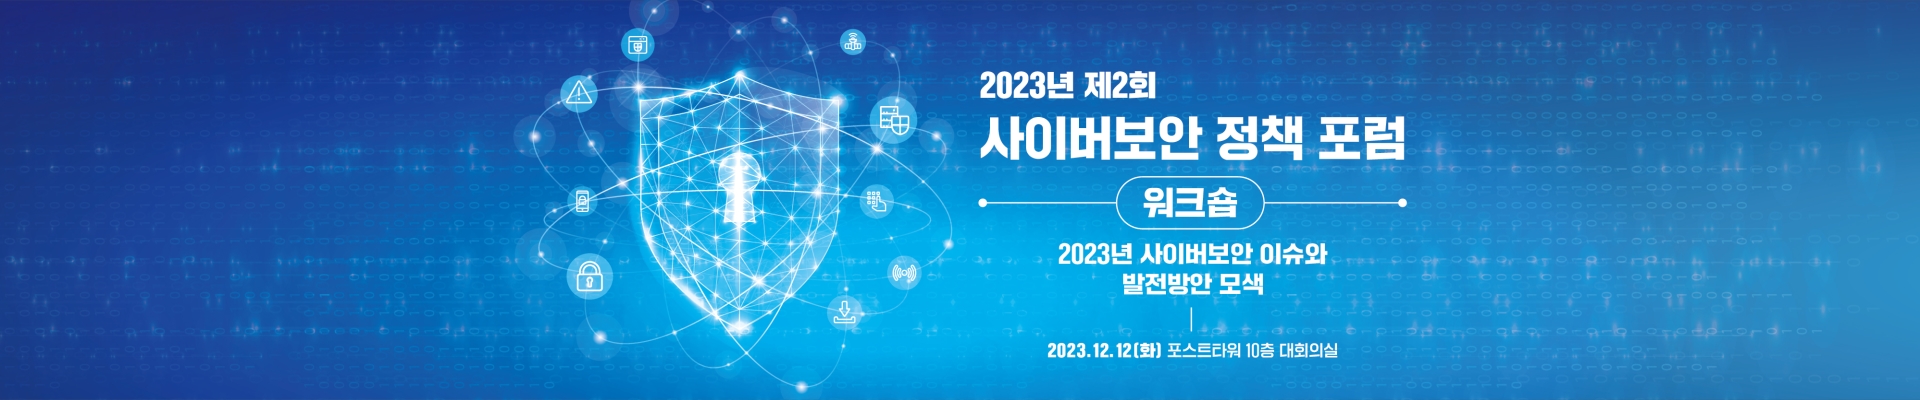 2023년 제2회 사이버보안 정책 포럼 워크숍